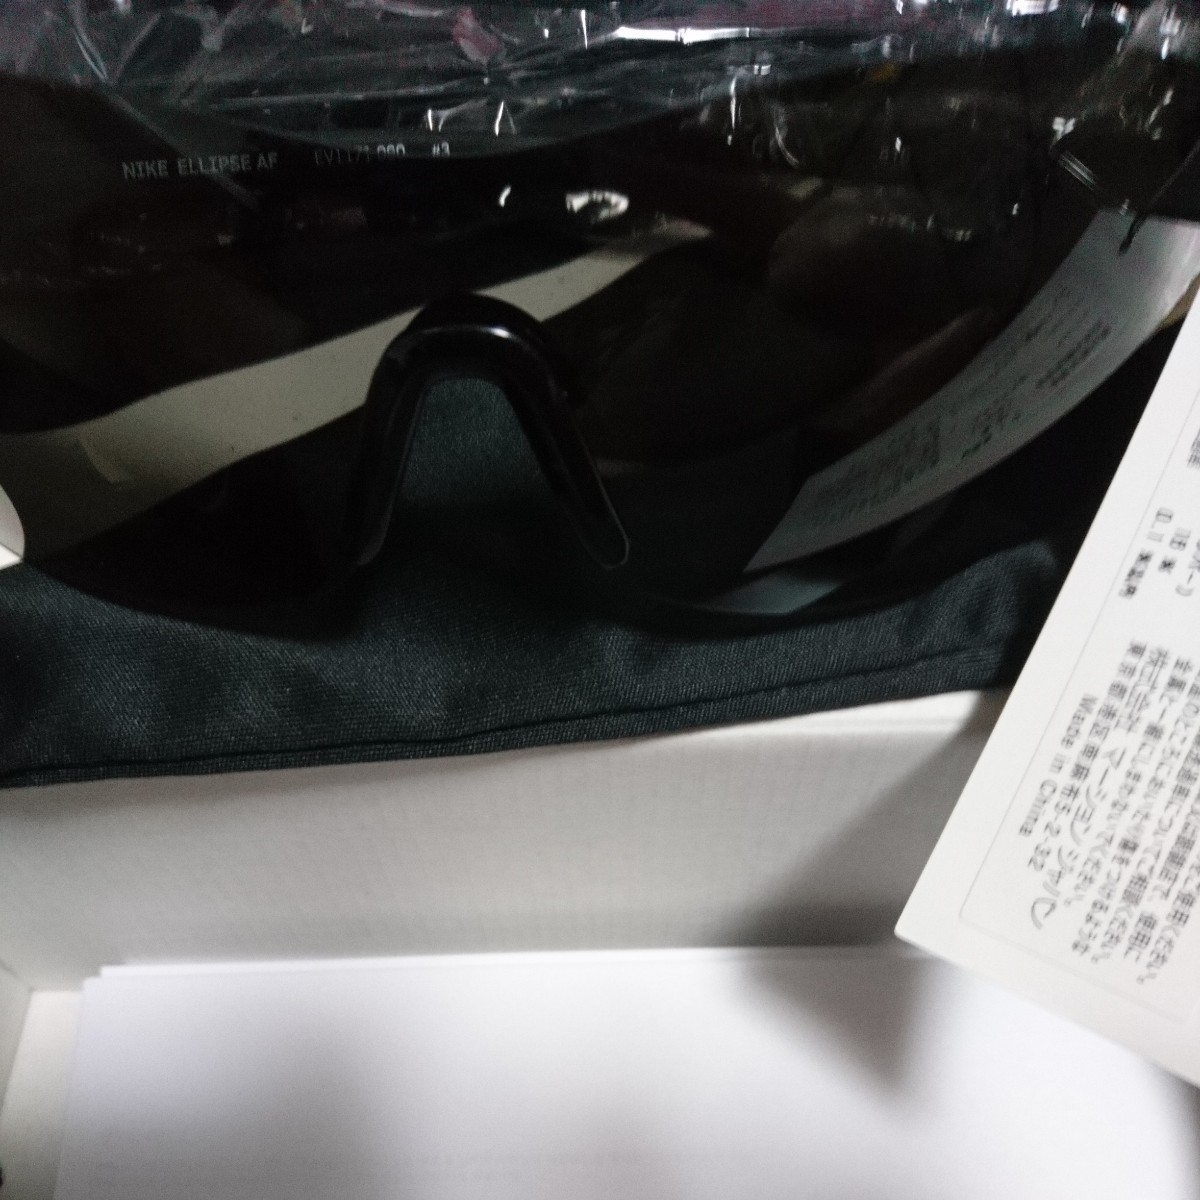 ◯新品ナイキ NIKE ELLIPSE AF ellipse af EV1172 060 ナイキ サングラス nike sunglasses uvカット MAXOPTICS 定価25,300円_画像5